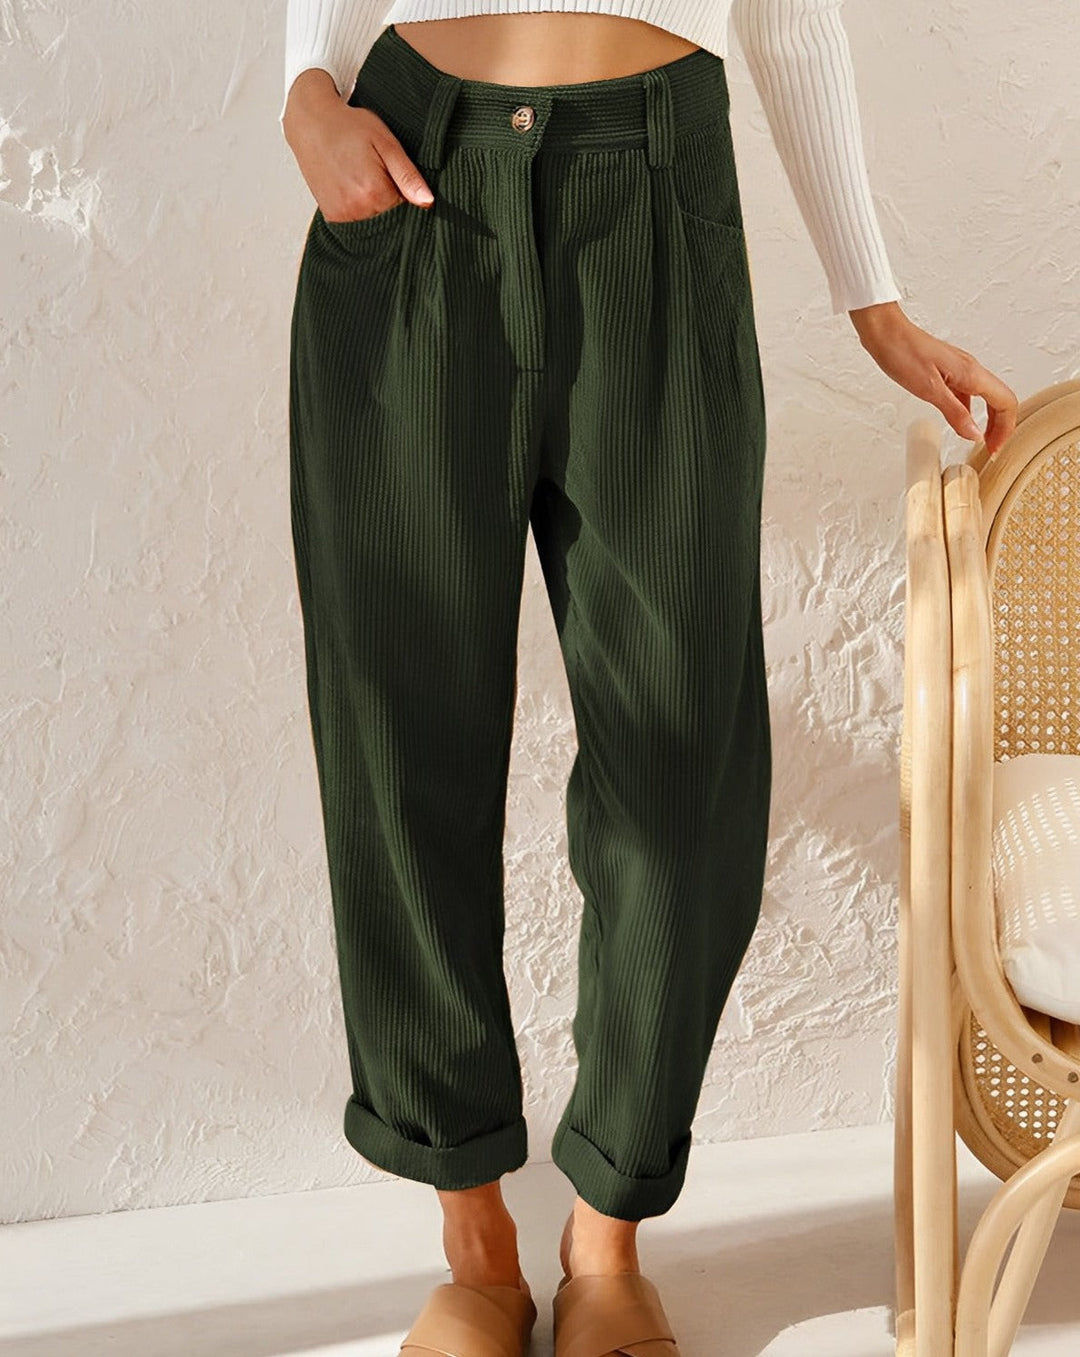 JENA | Stylish corduroy trousers